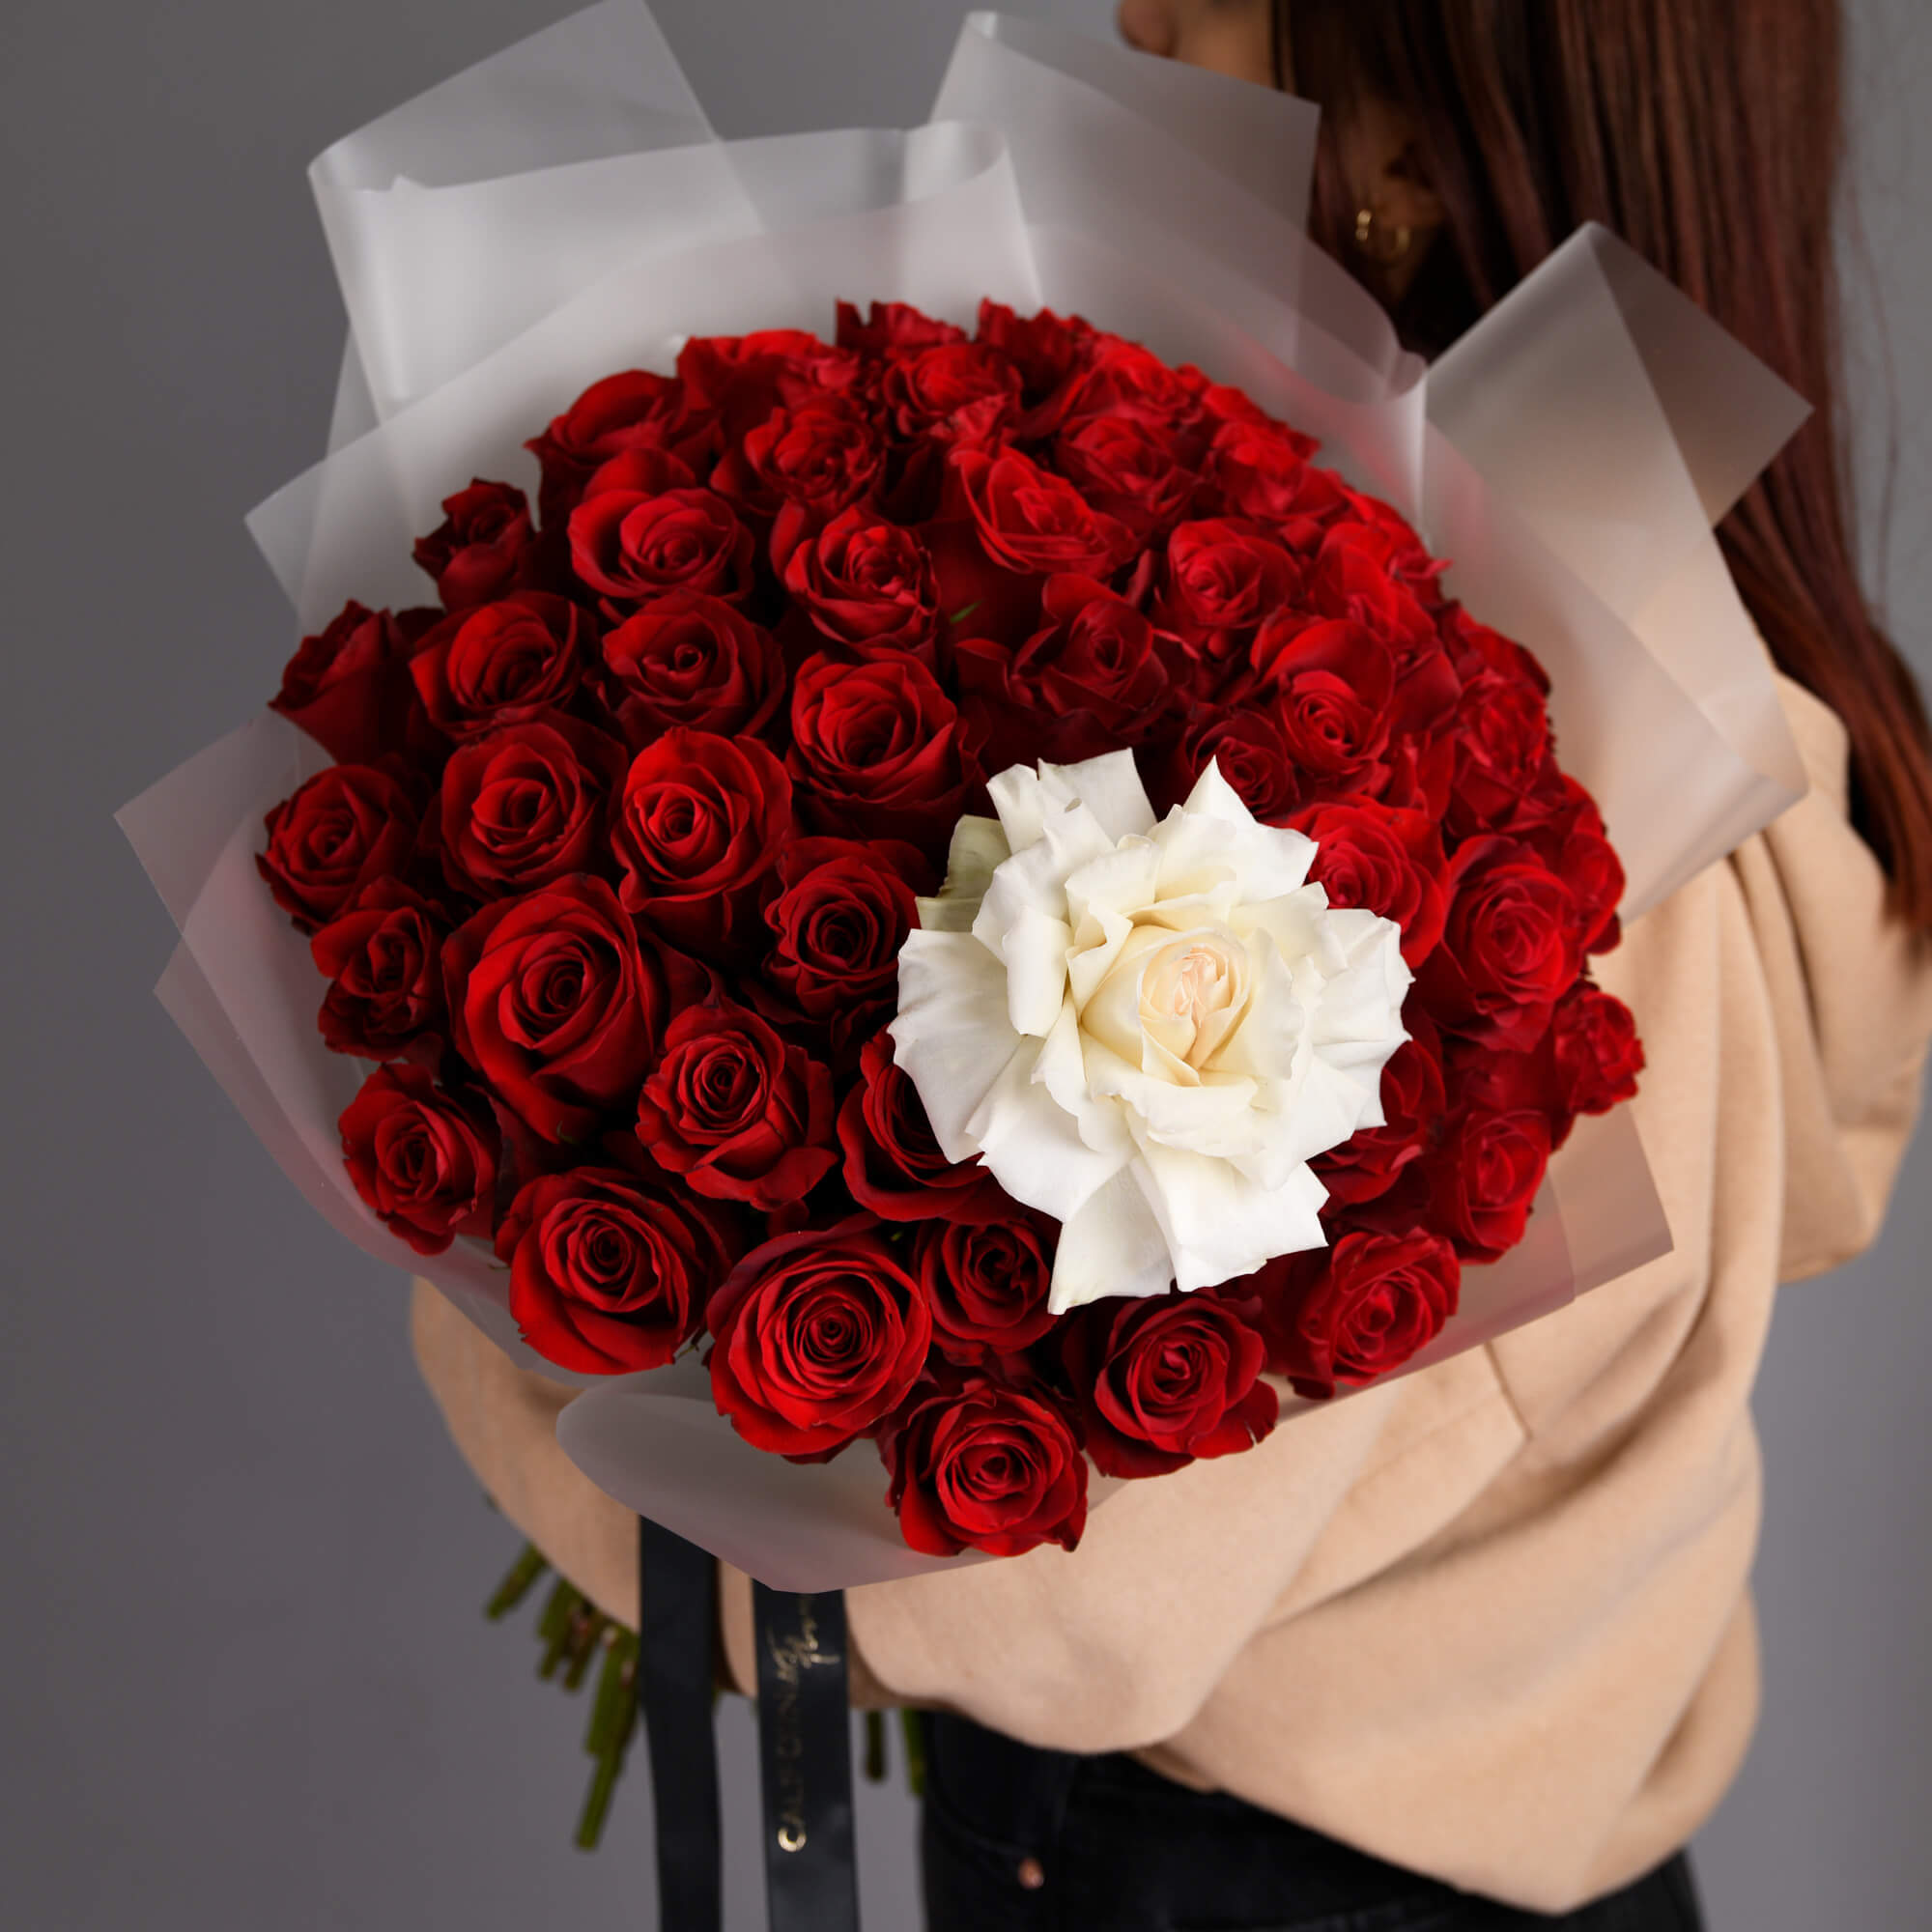 Buchet cu 50 trandafiri rosii si un trandafir alb